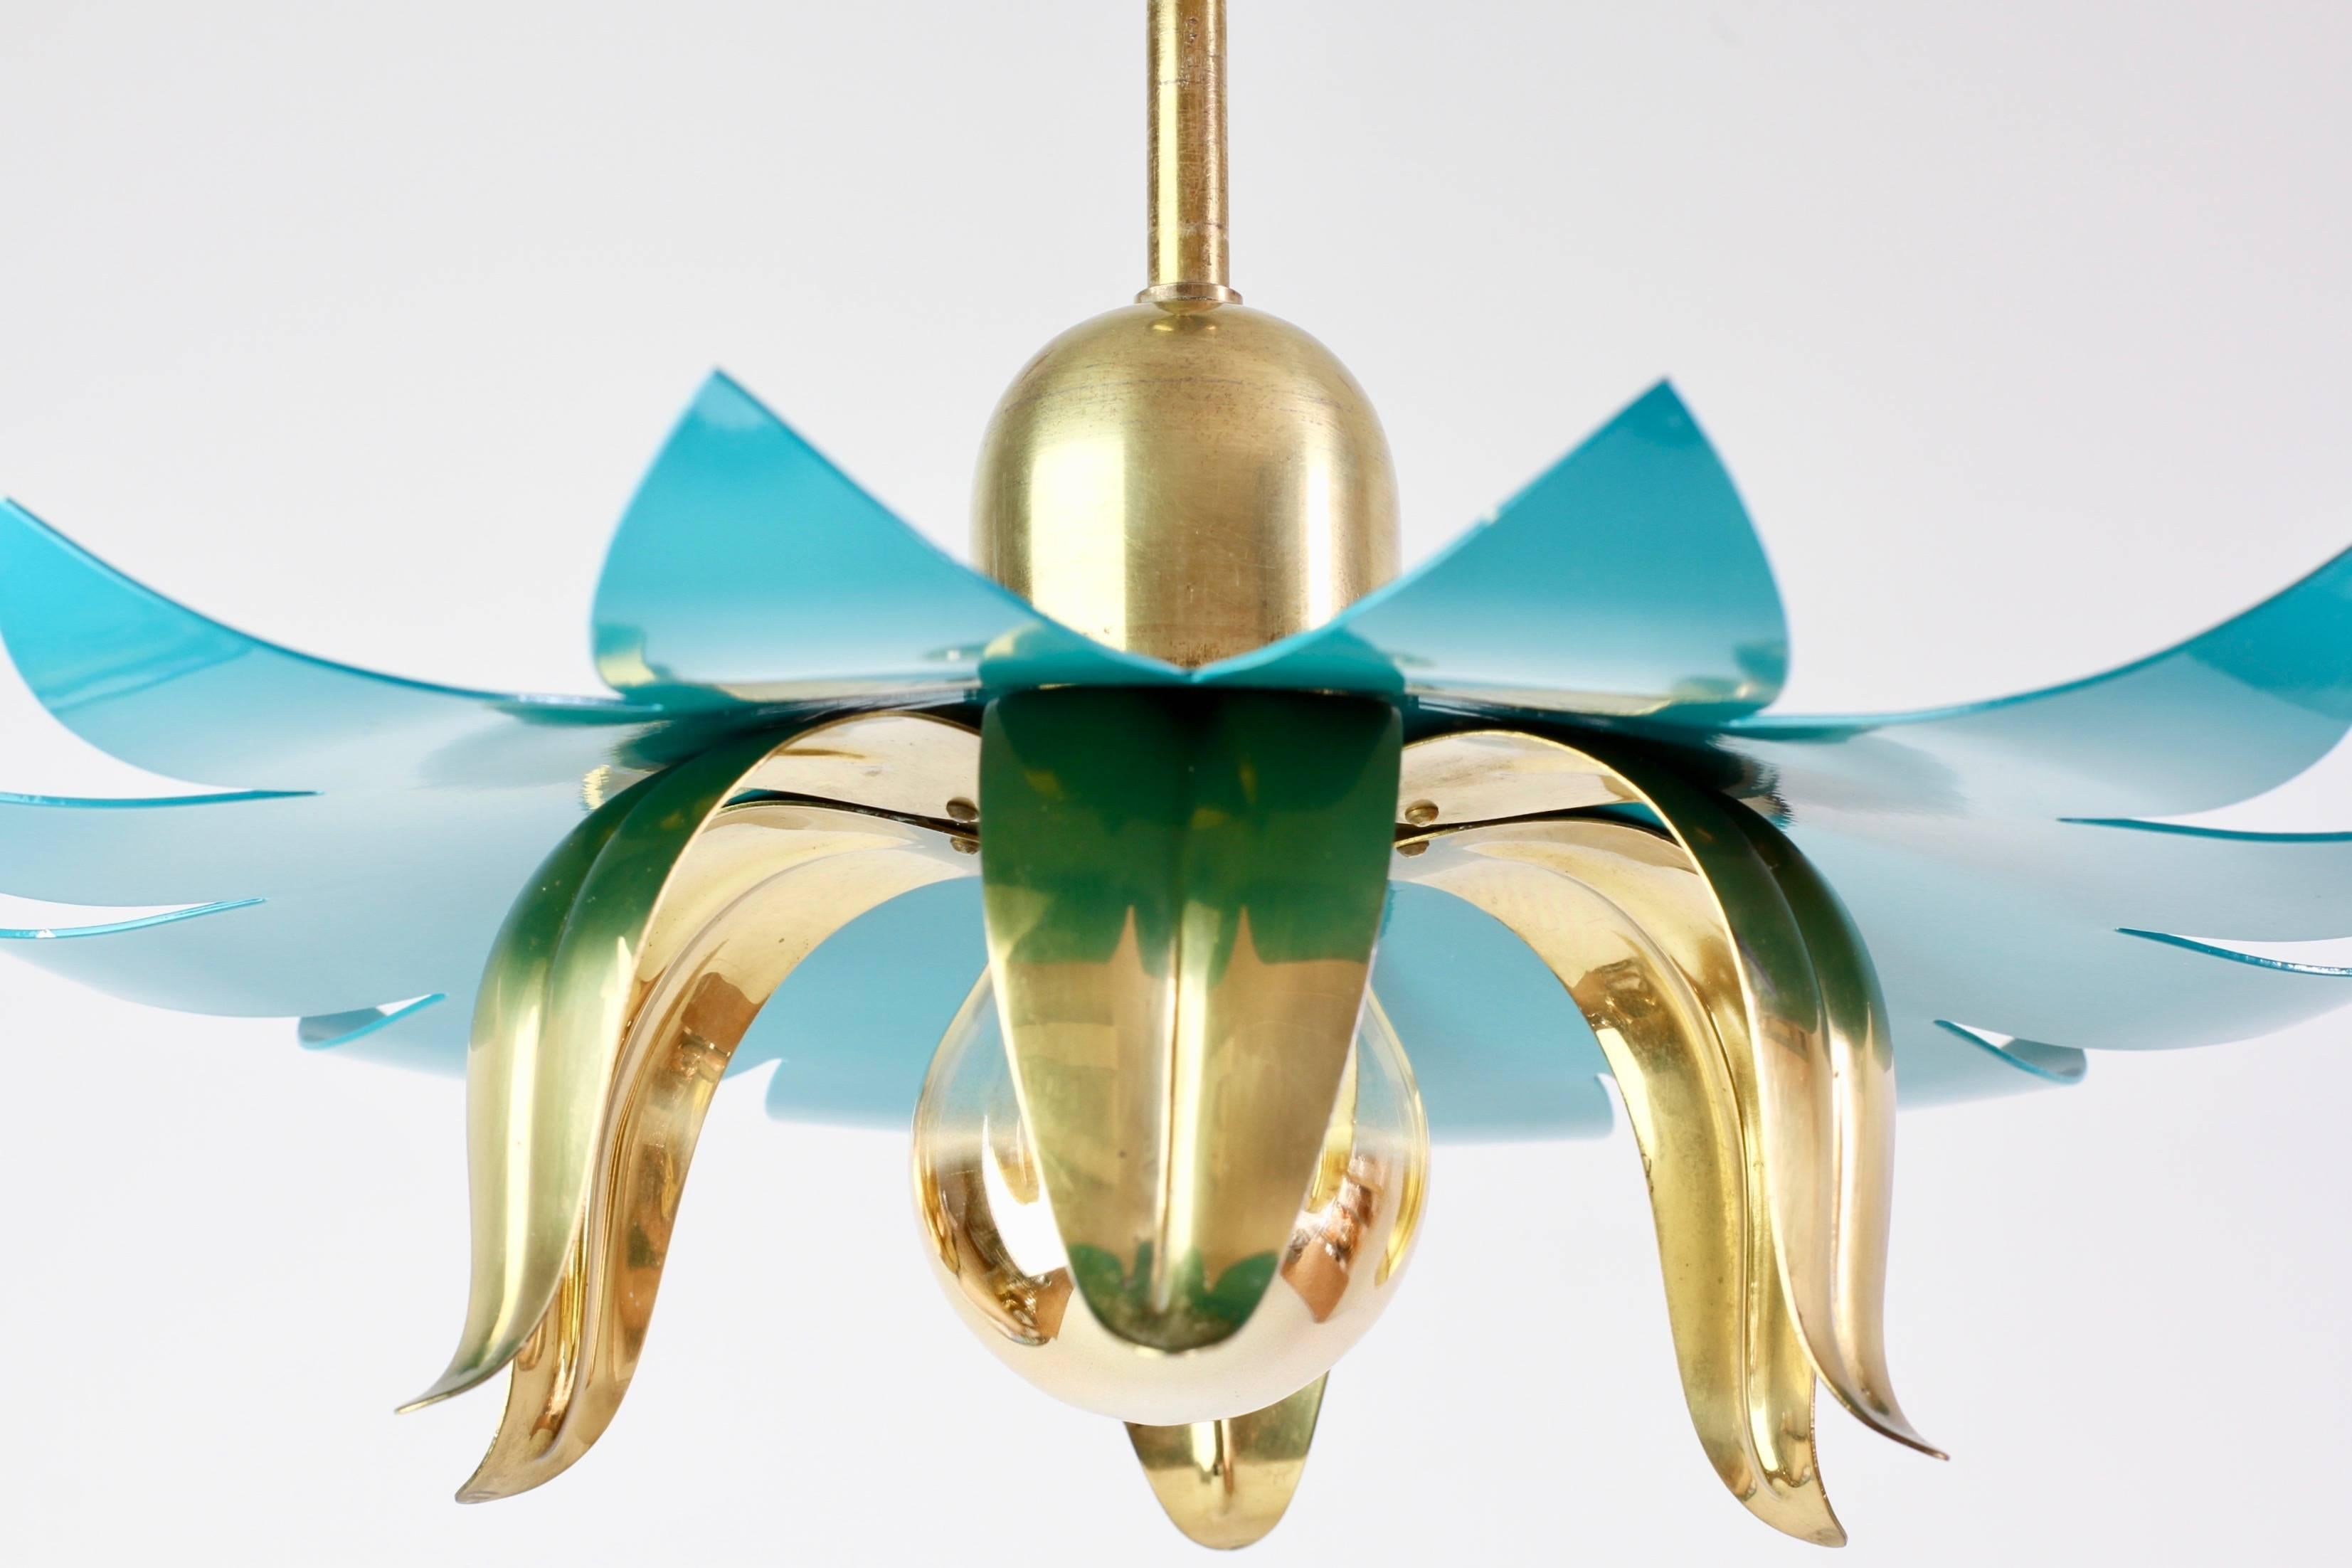 Mid-Century Modern 1950s Italian Stilnovo Style Brass and Turquoise Flower Pendant Light Fixture